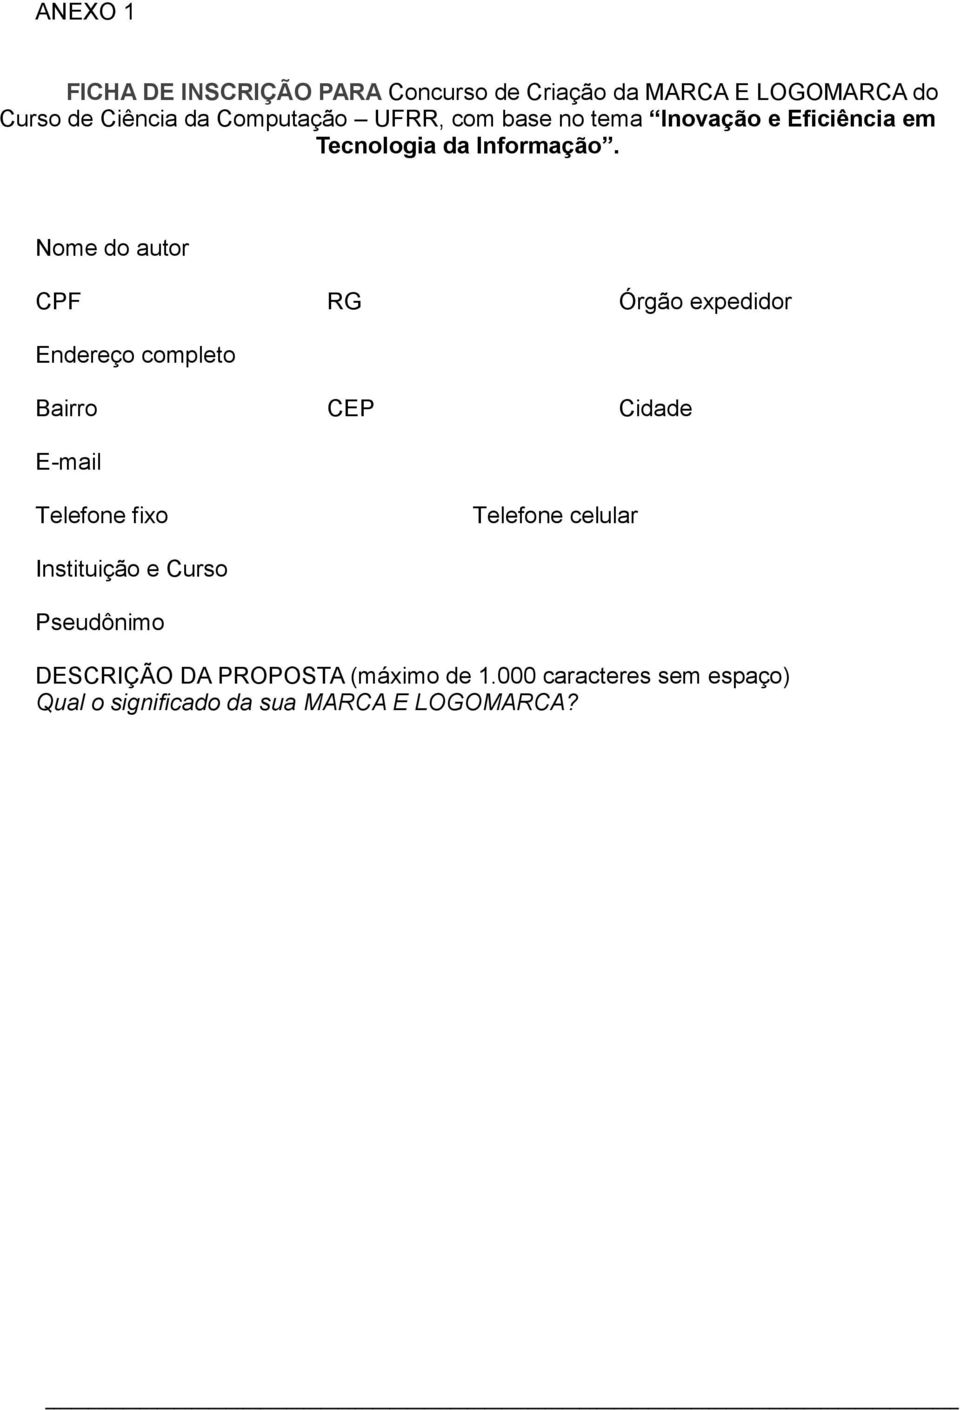 Nome do autor CPF RG Órgão expedidor Endereço completo Bairro CEP Cidade E-mail Telefone fixo Telefone